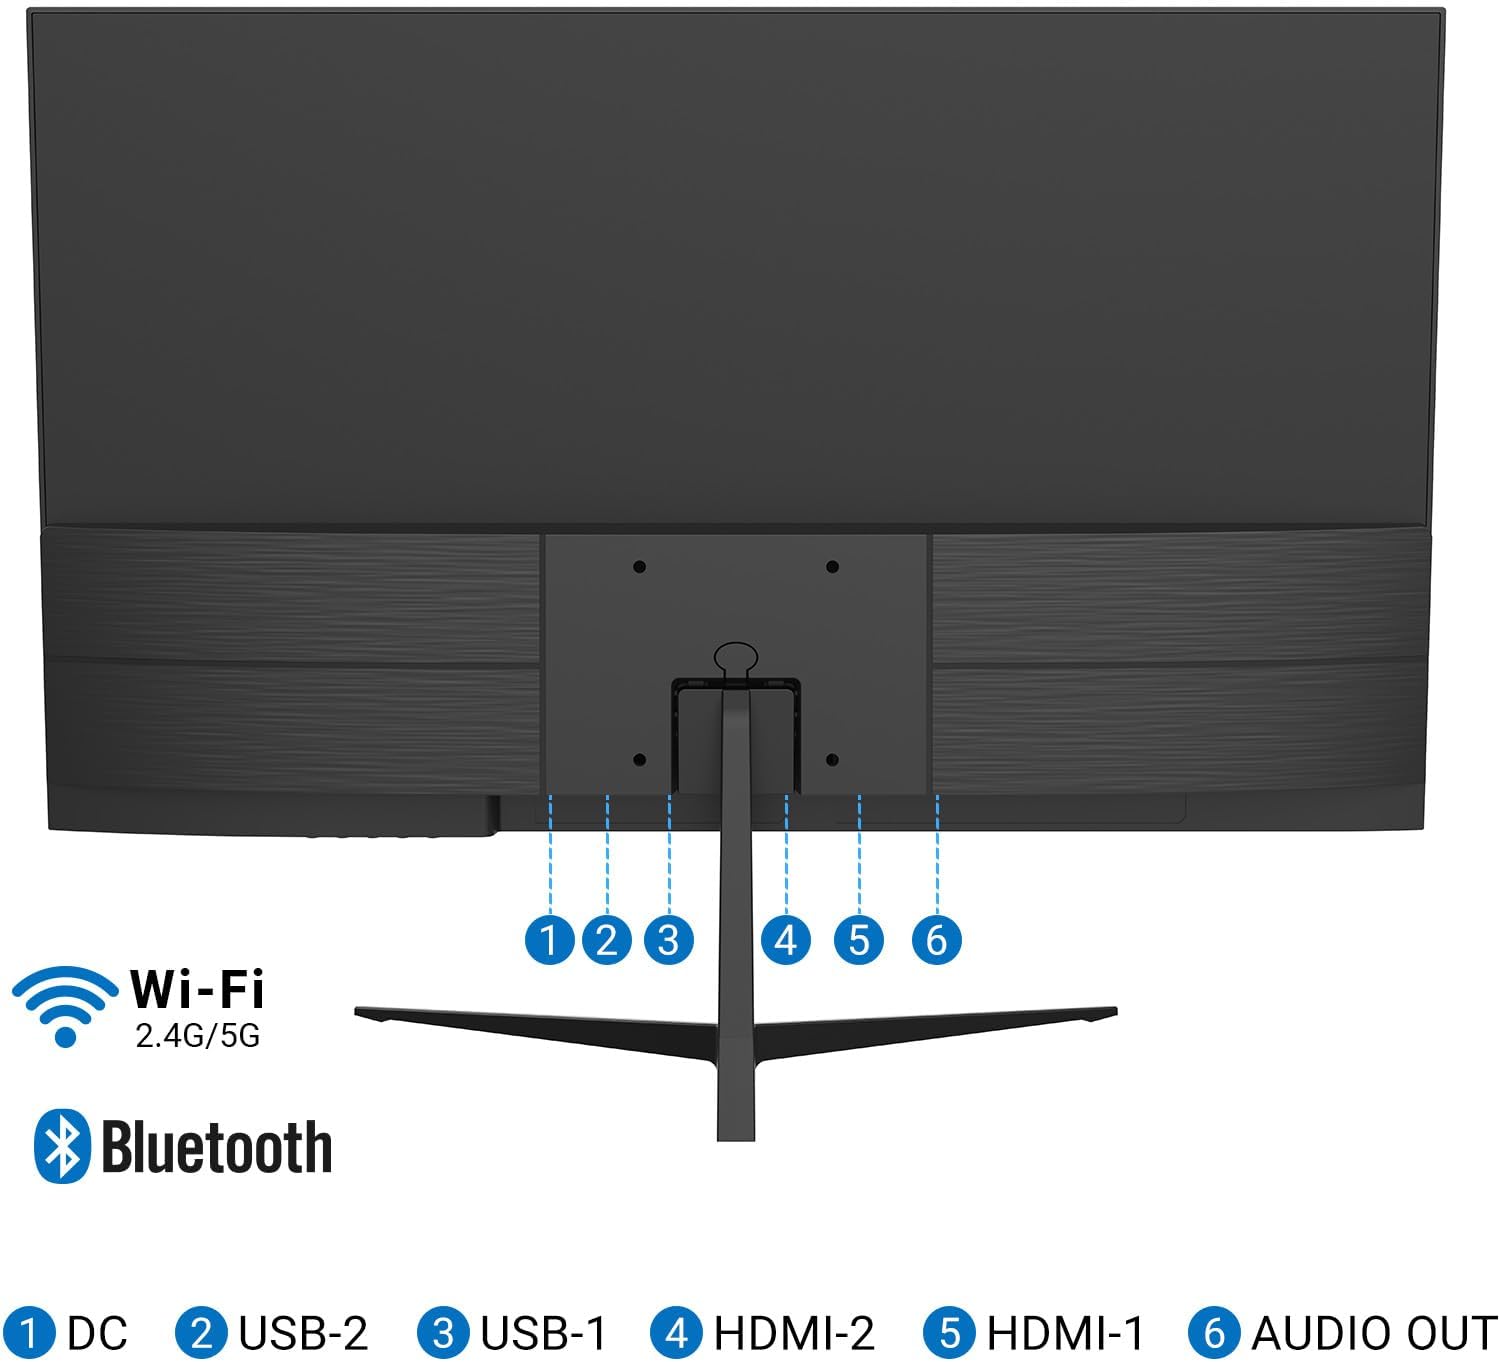 ANTTEQ AV32 Smart TV 32 Inch (80 cm) Televisie met Netflix, Prime Video, Rakuten TV, Disney+, Youtube, Wifi, Triple-Tuner DVB-T2 / S2 / C, Dolby Audio